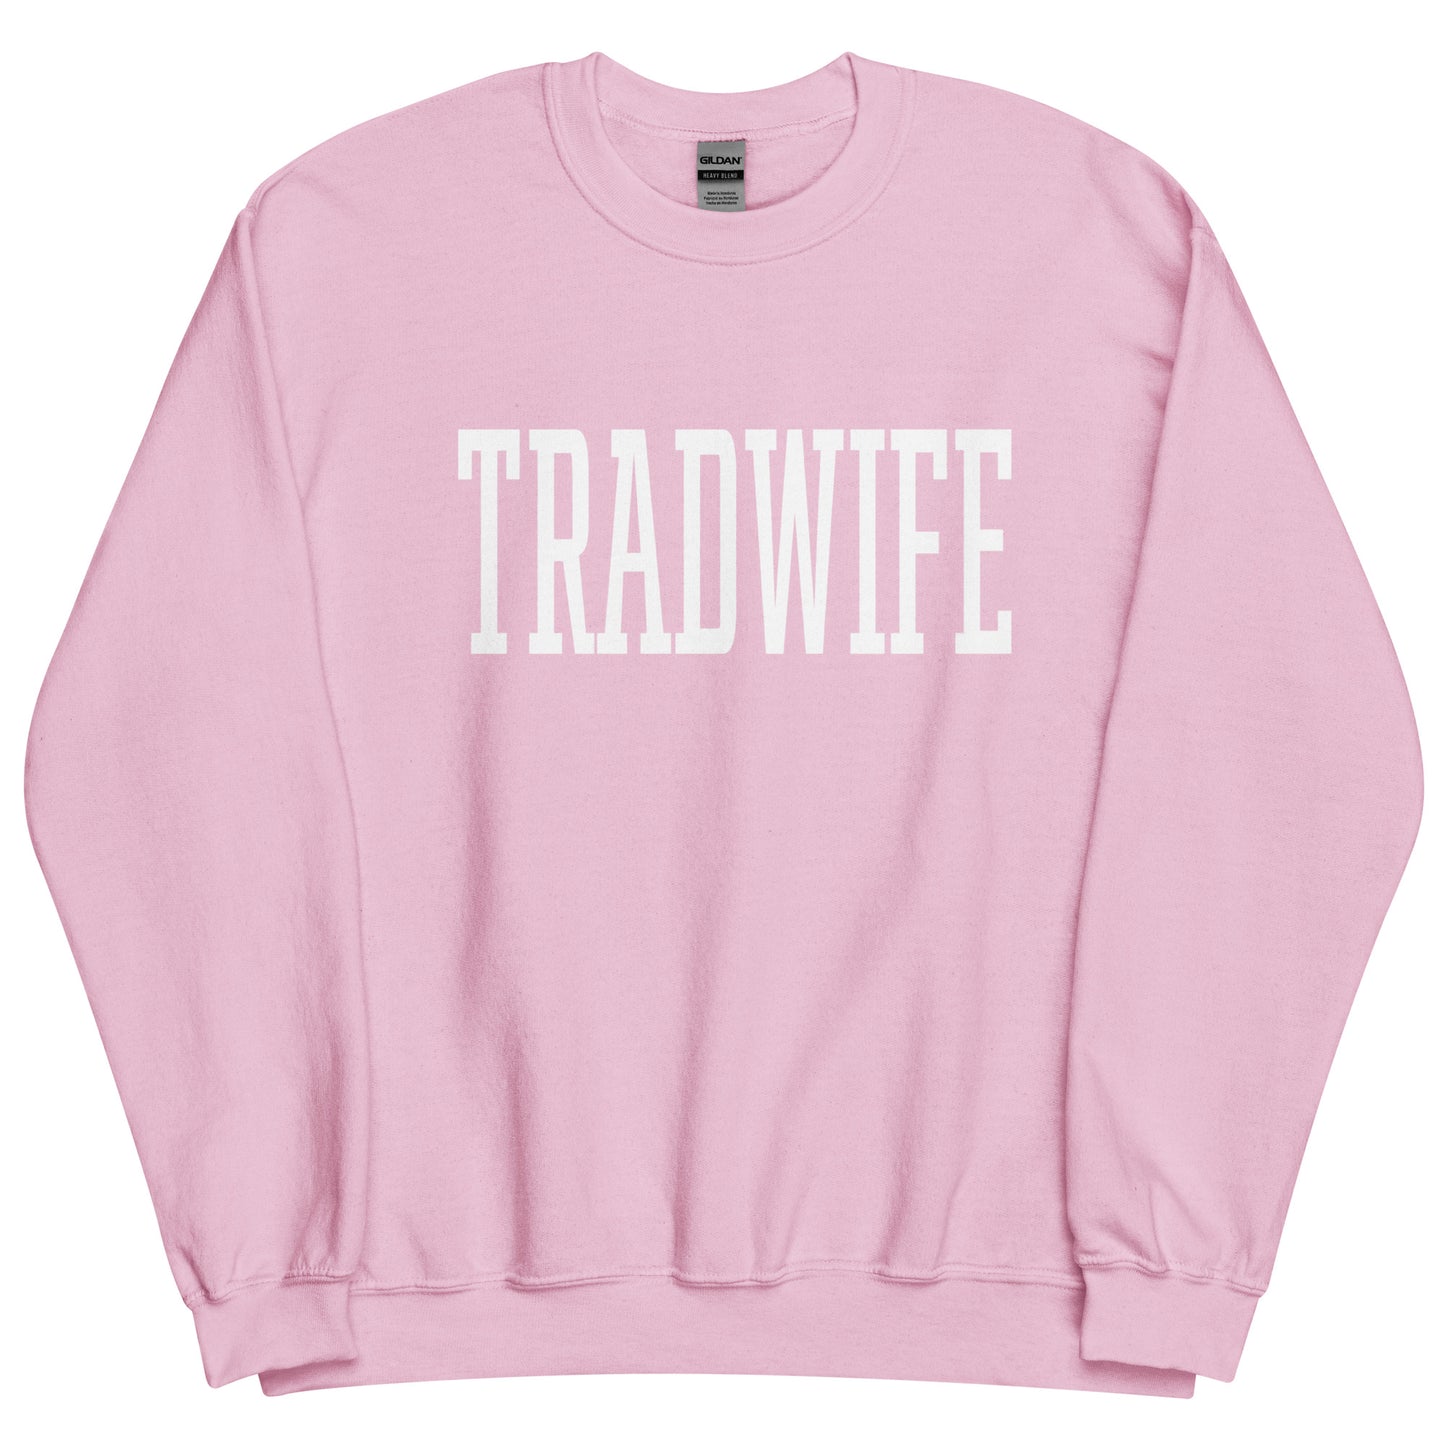 Tradwife Sweatshirt